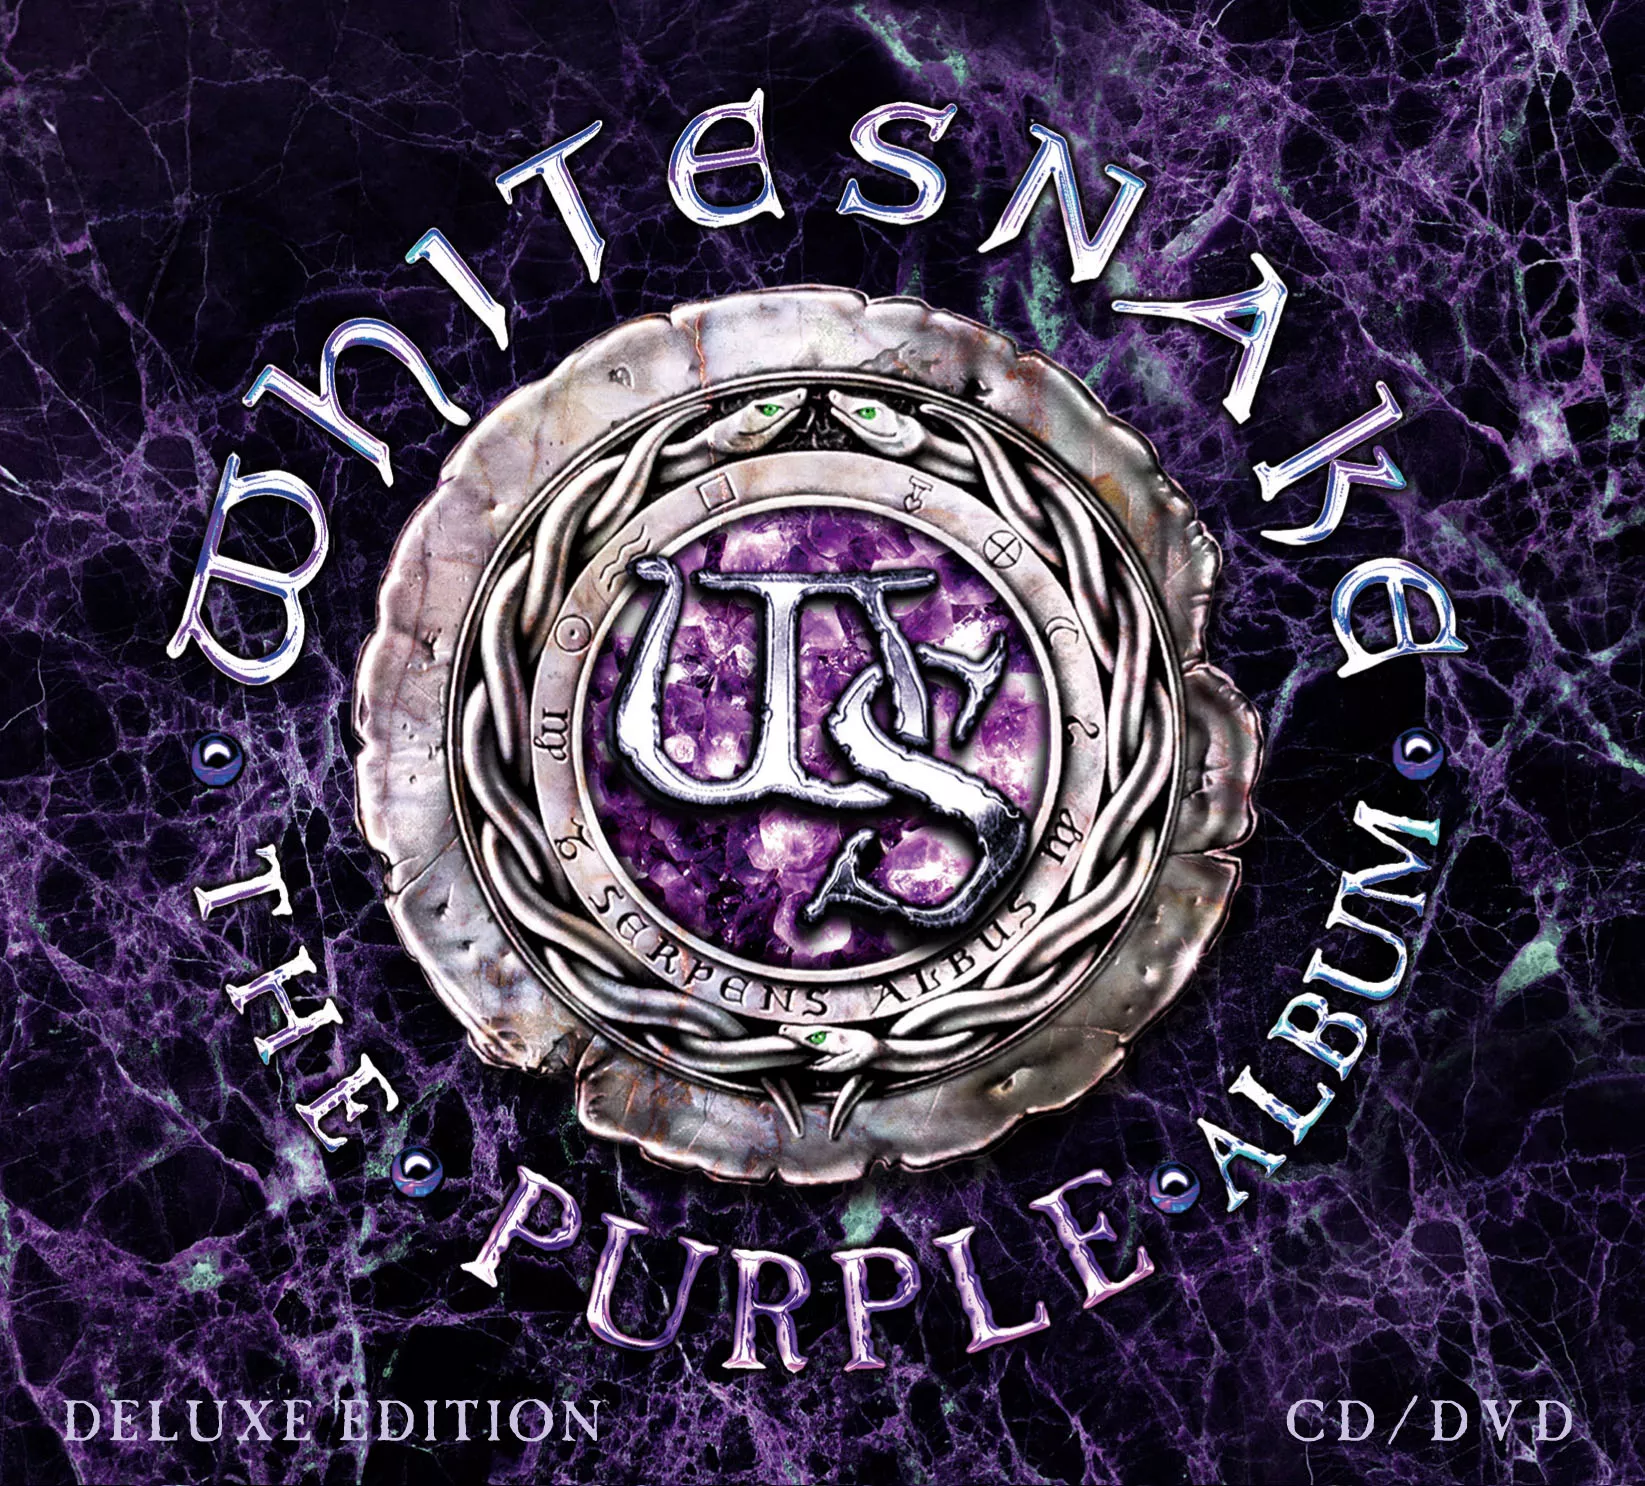 The Purple Album, Deluxe Edition cd/dvd - Whitesnake